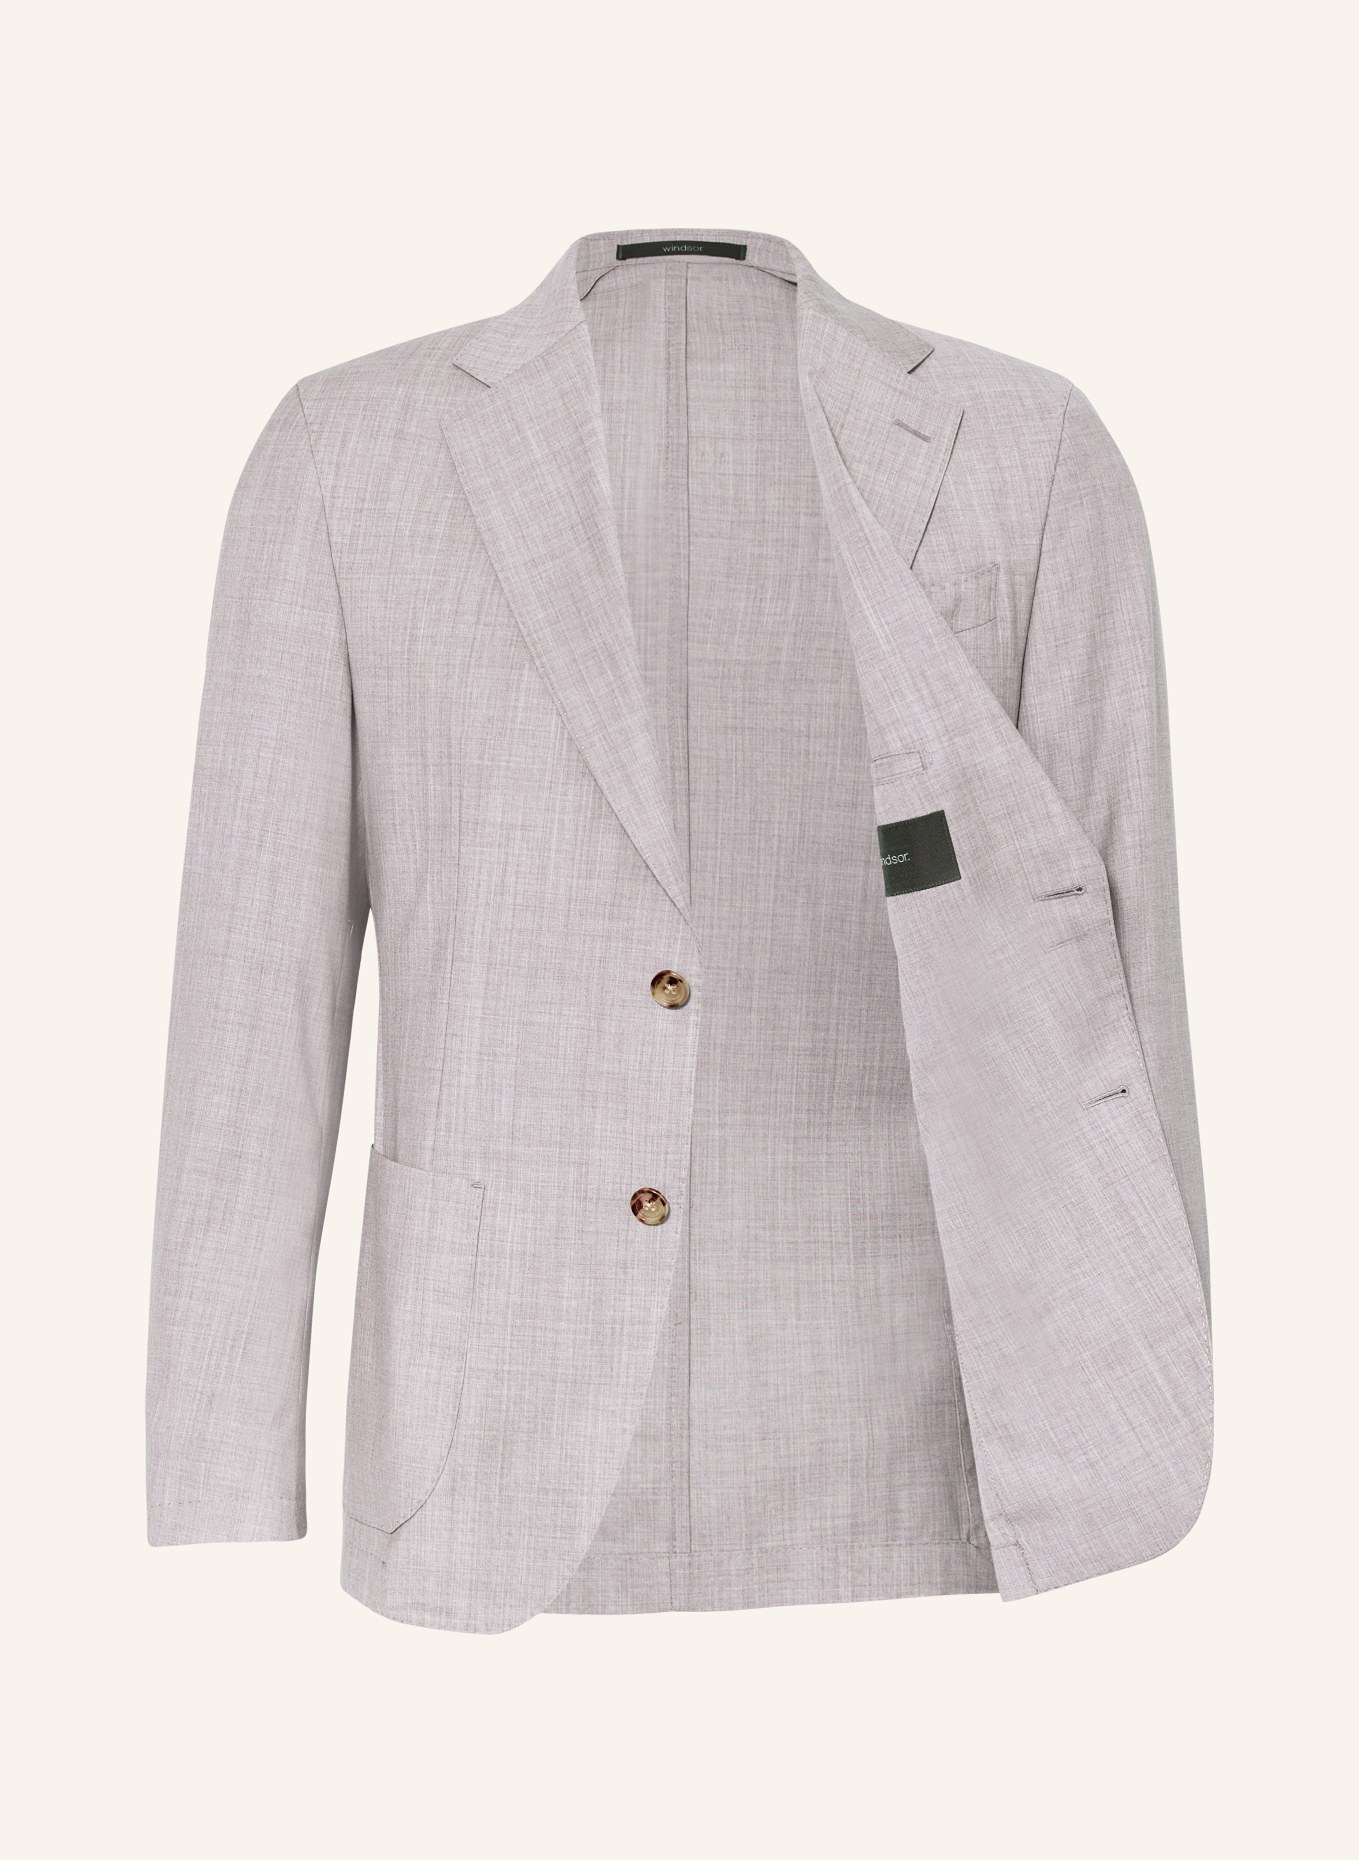 windsor. Suit jacket TRAVEL shaped Fit, Color: 035 Medium Grey                035 (Image 4)